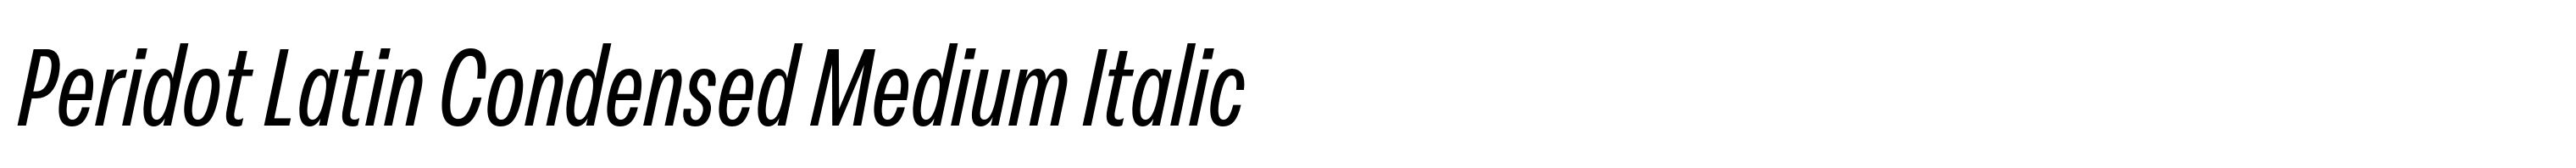 Peridot Latin Condensed Medium Italic